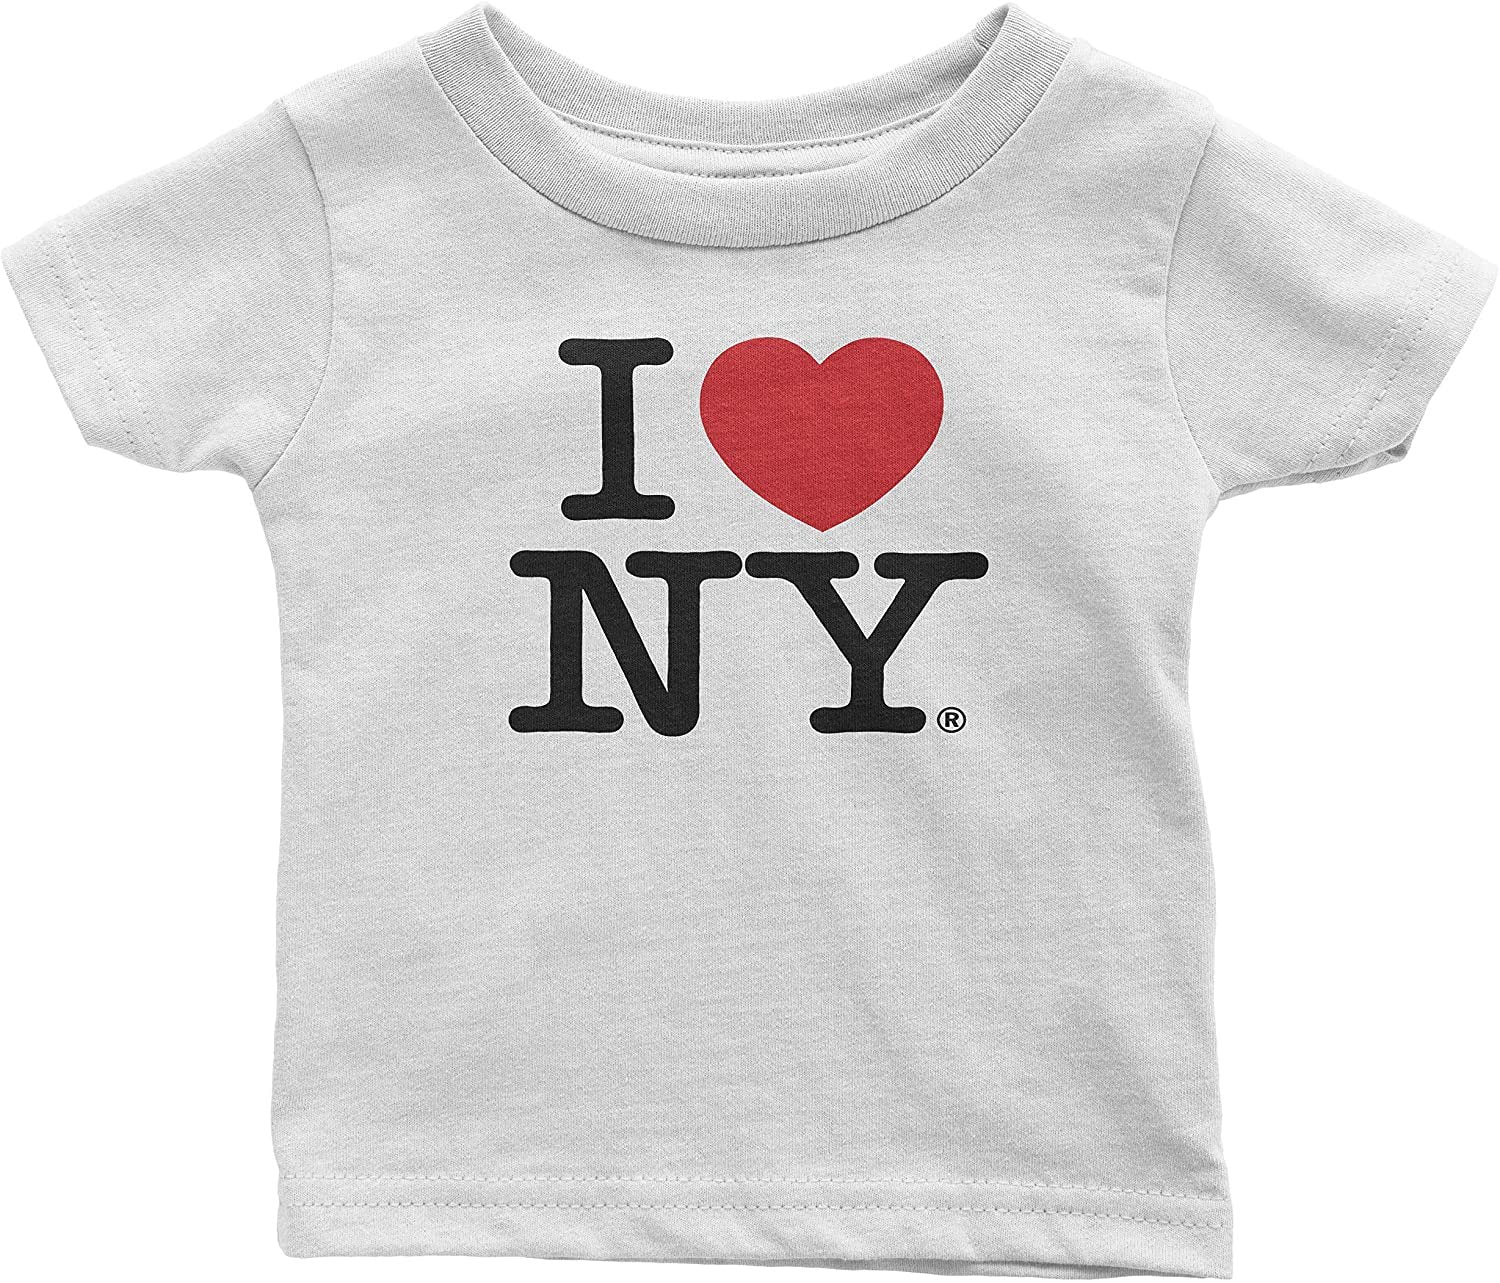 Ich liebe NY Baby T-Shirt (Weiß)